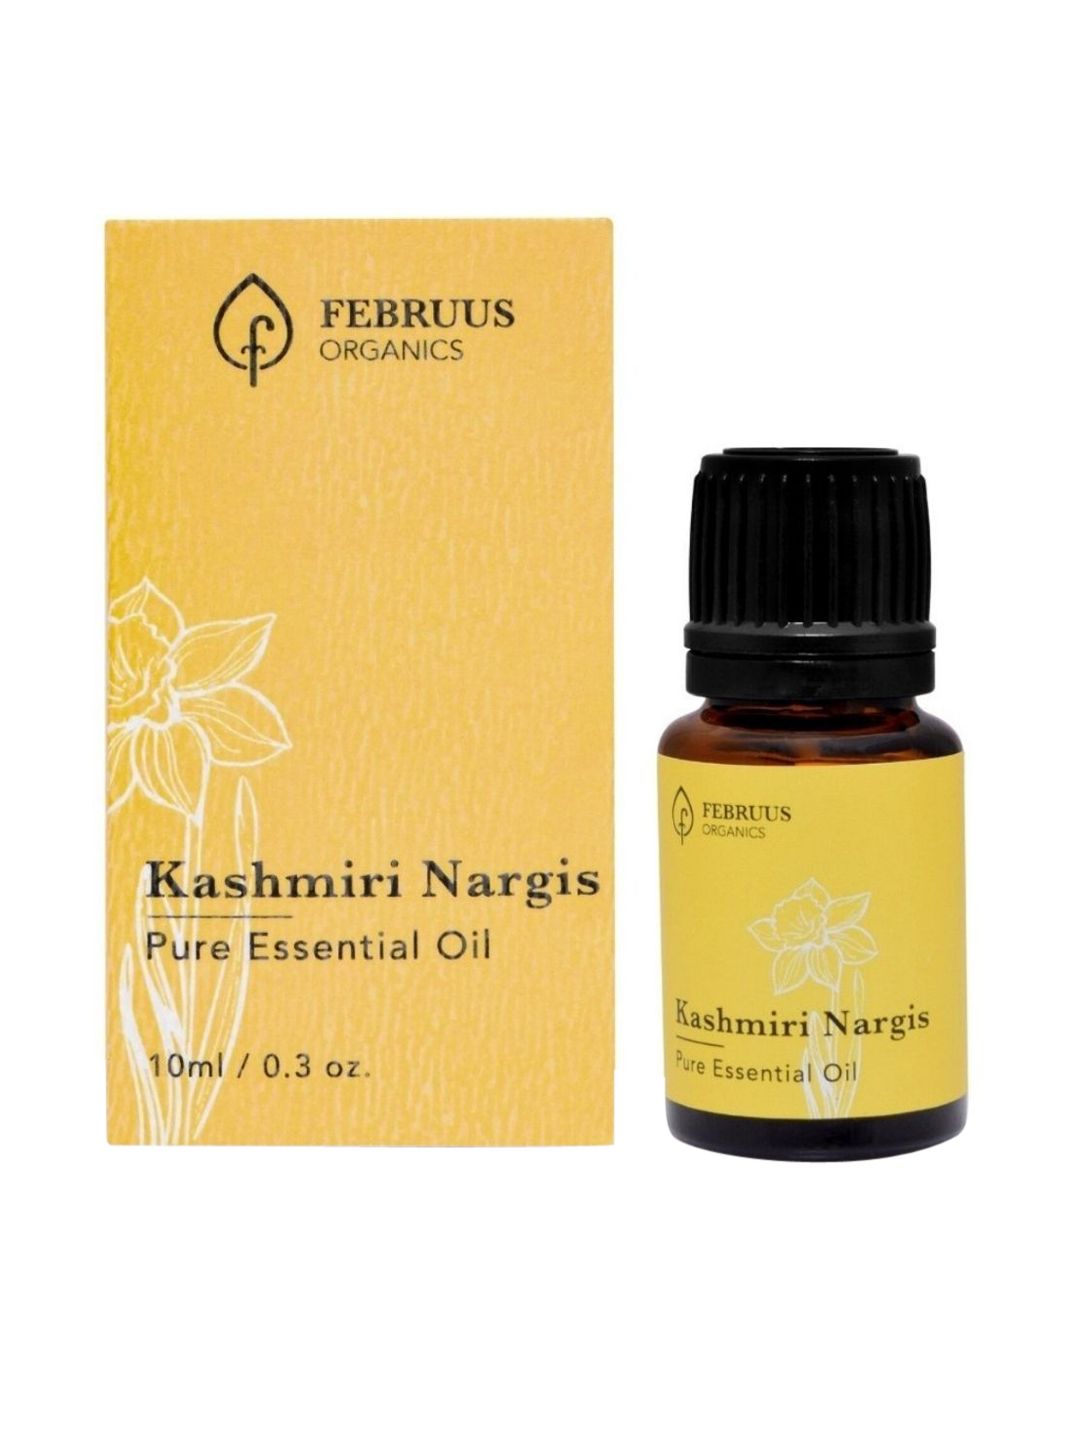 Februus Organics Kashmiri Nargis Essential Oil 10 ml Price in India